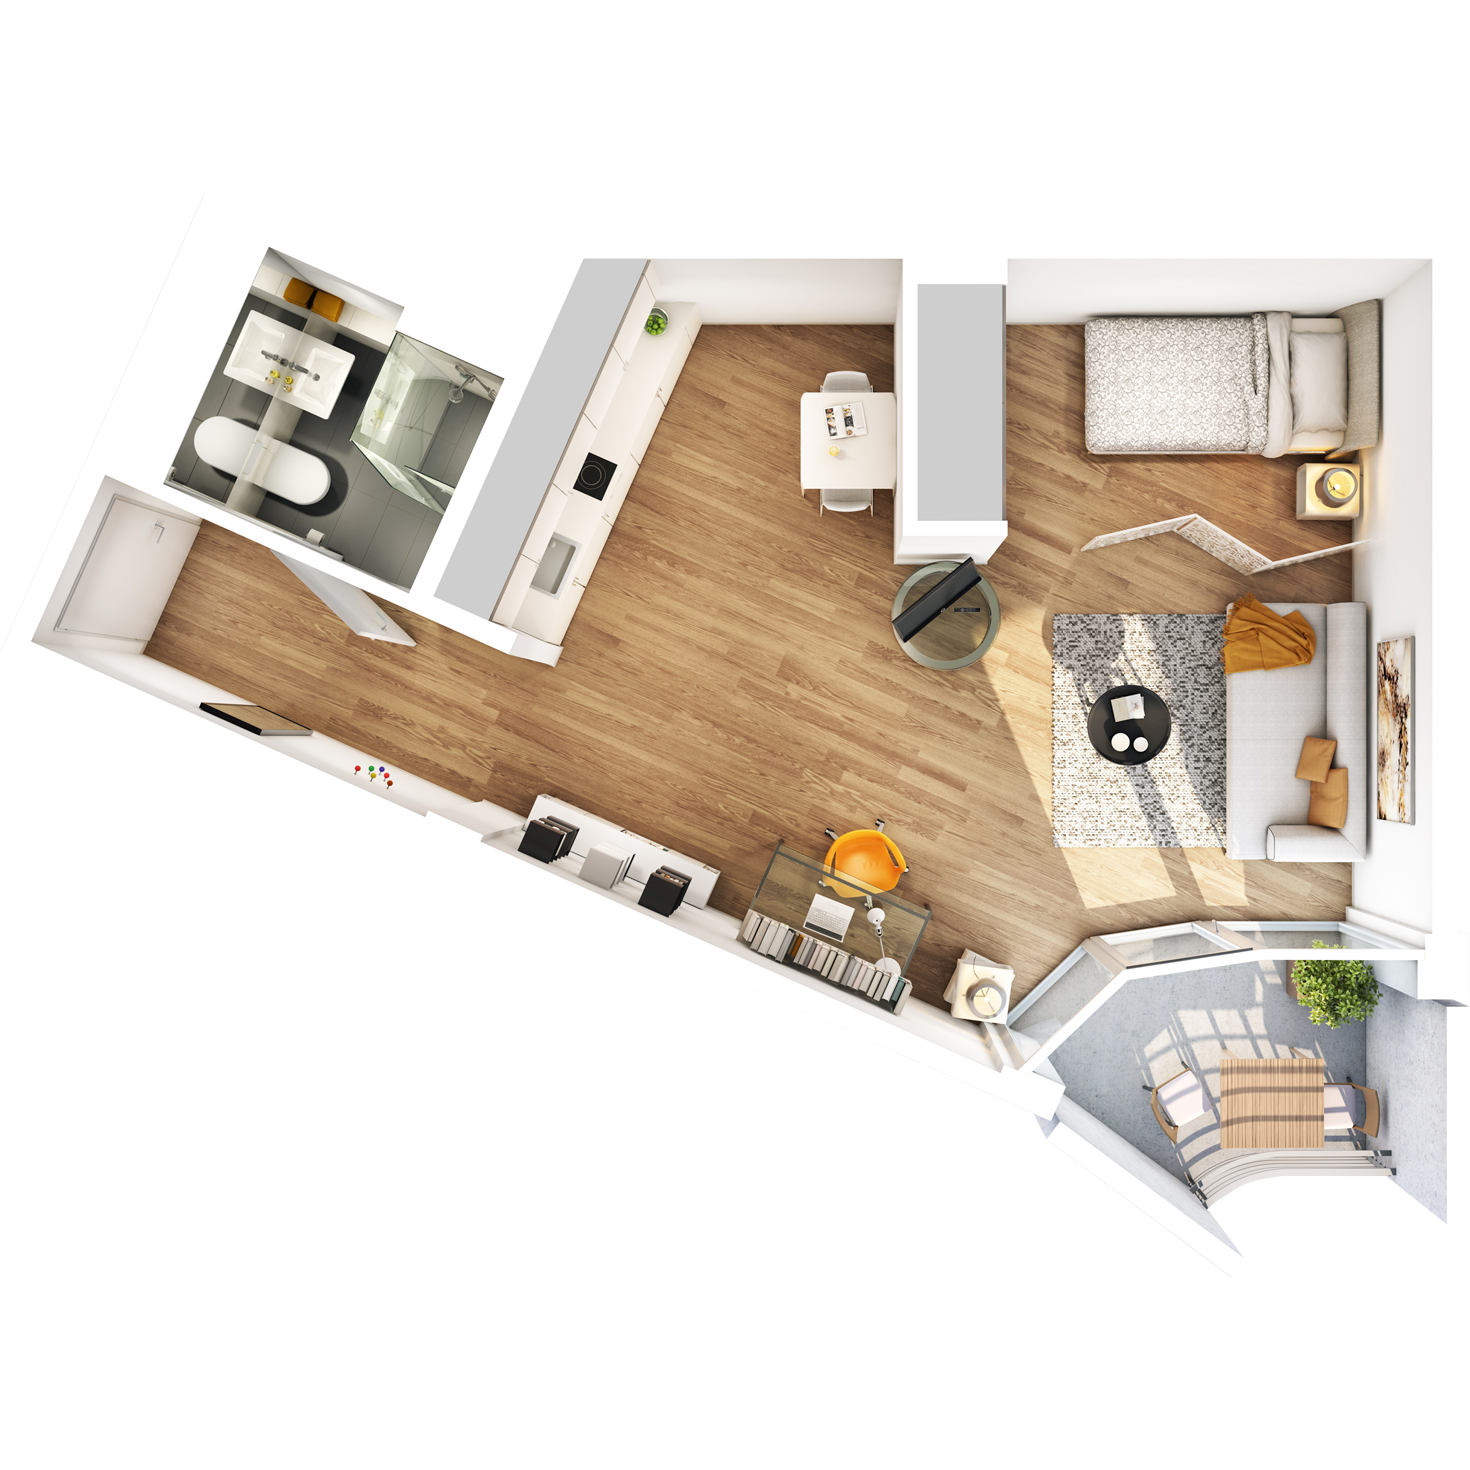 Visualisierung Beispiel 1-Zimmer-Wohnung Typ G mit Bad, abgetrennter Küche, großem Wohn- und Schlafbereich und Balkon im studiosus 5 Apartmenthaus in Augsburg